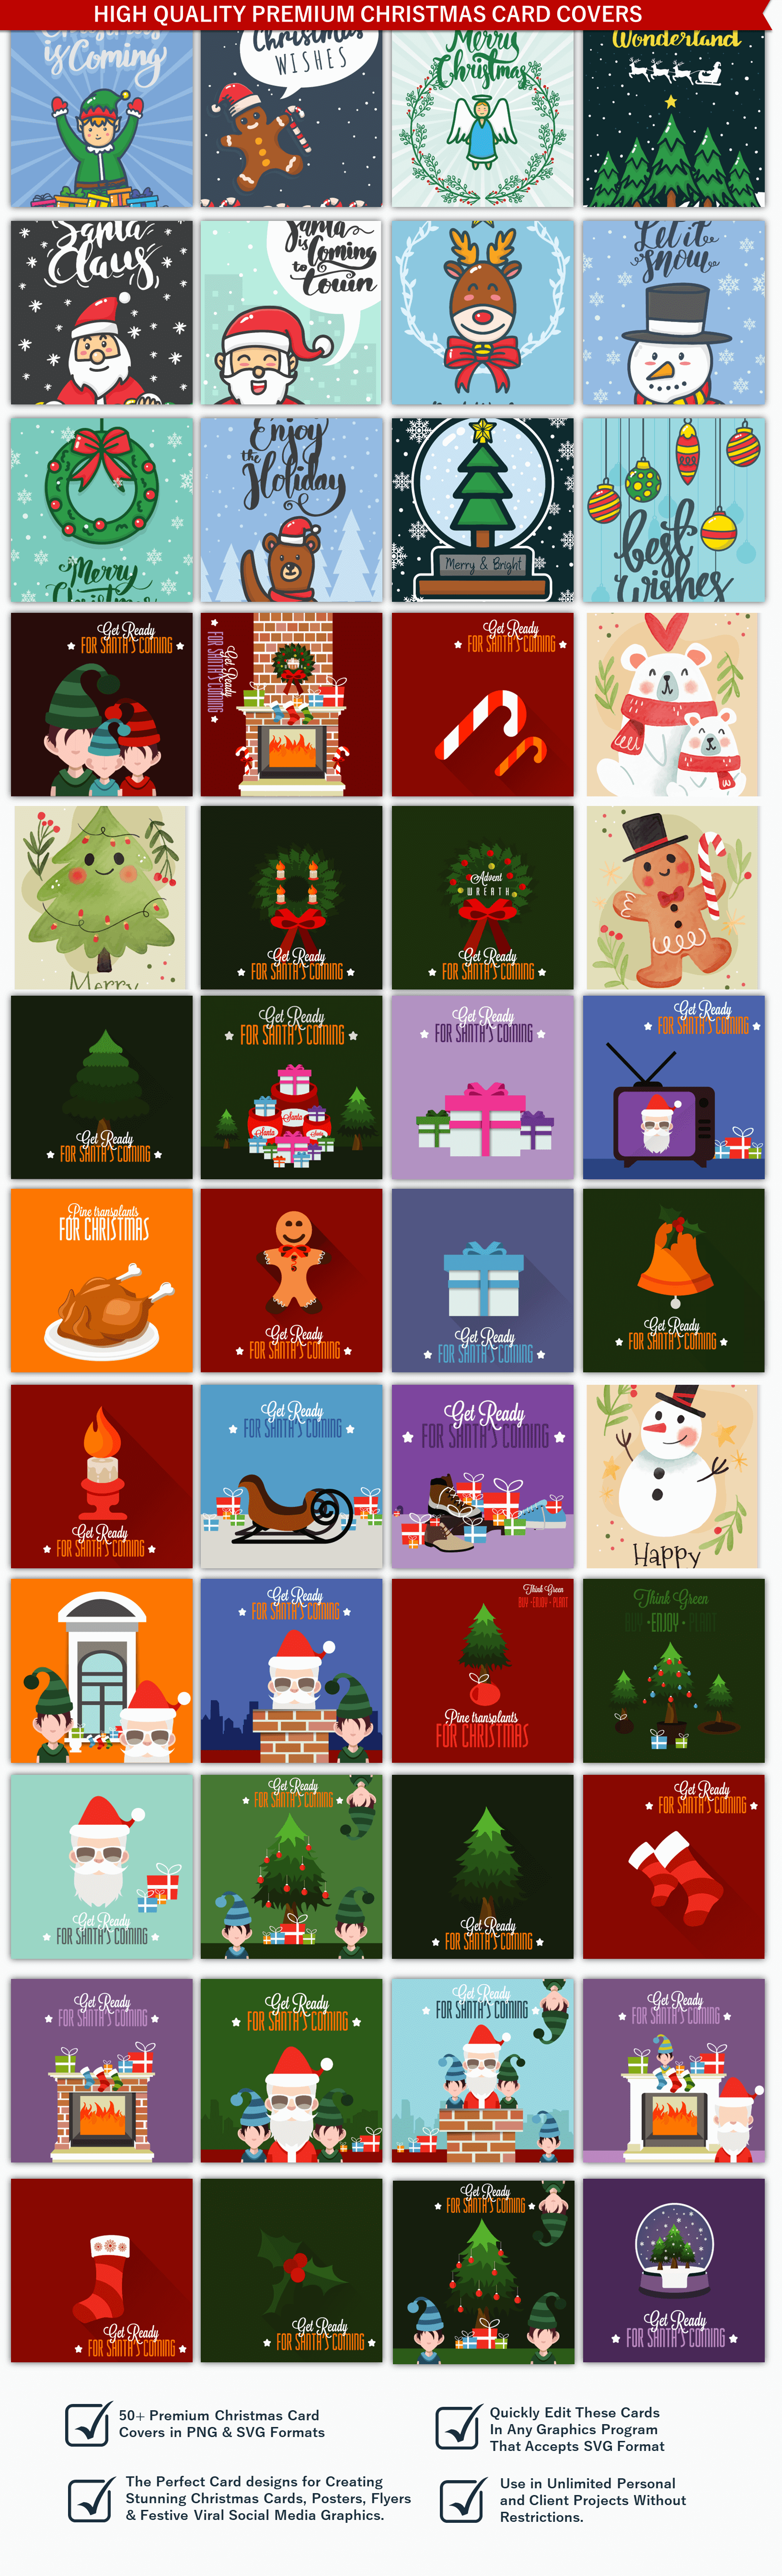 Christmas-card-covers-Display